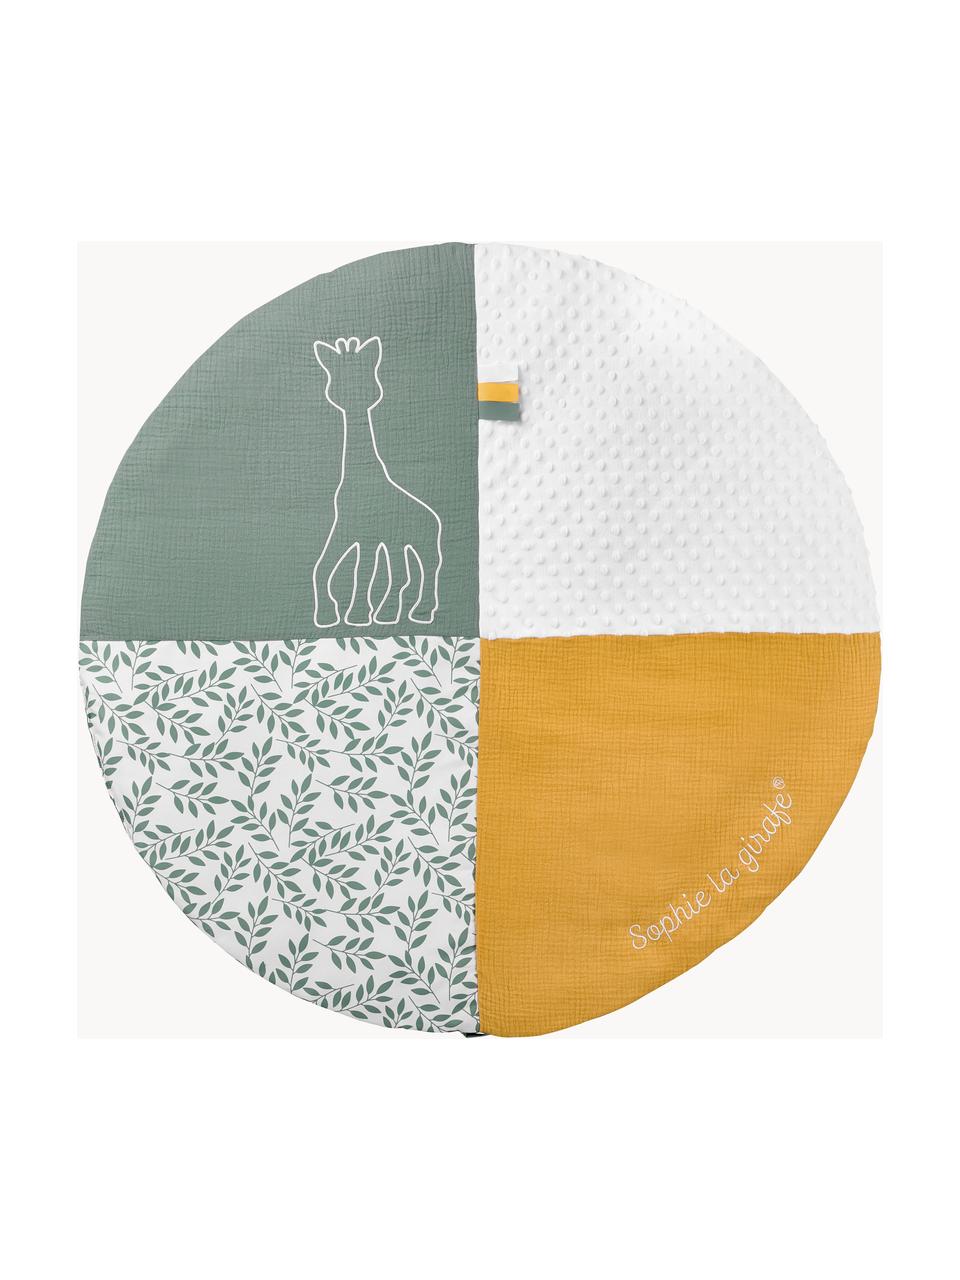 Krabbeldecke Sophie la girafe mit Activity-Bogen, 90 % Polyester, 10 % Baumwolle, Weiß, Gelb, Salbeigrün, Ø 90 x H 53 cm